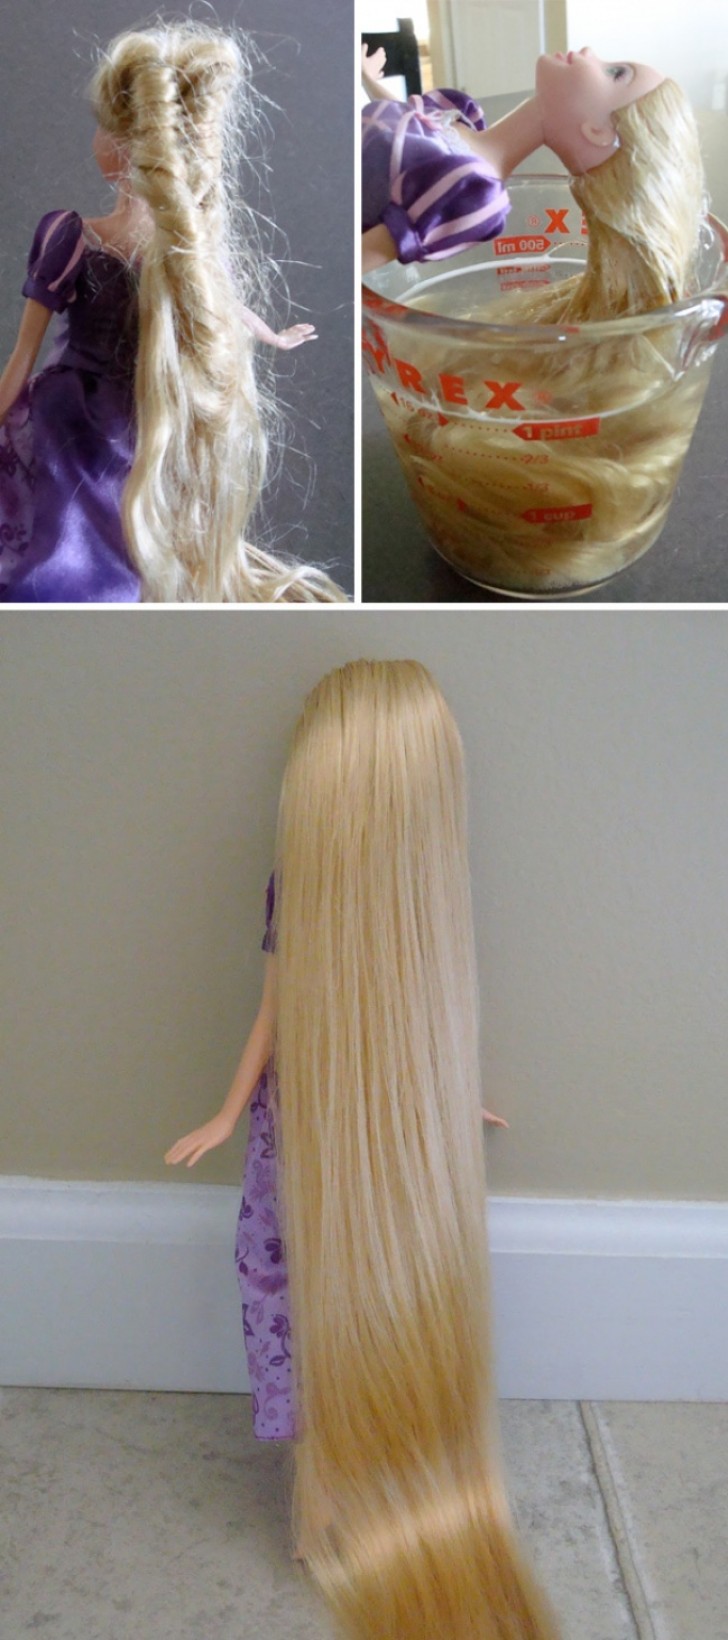 10. I capelli delle Barbie sono un disastro? Bagnateli in una soluzione di sapone per i piatti e balsamo per farli tornare in splendida forma!